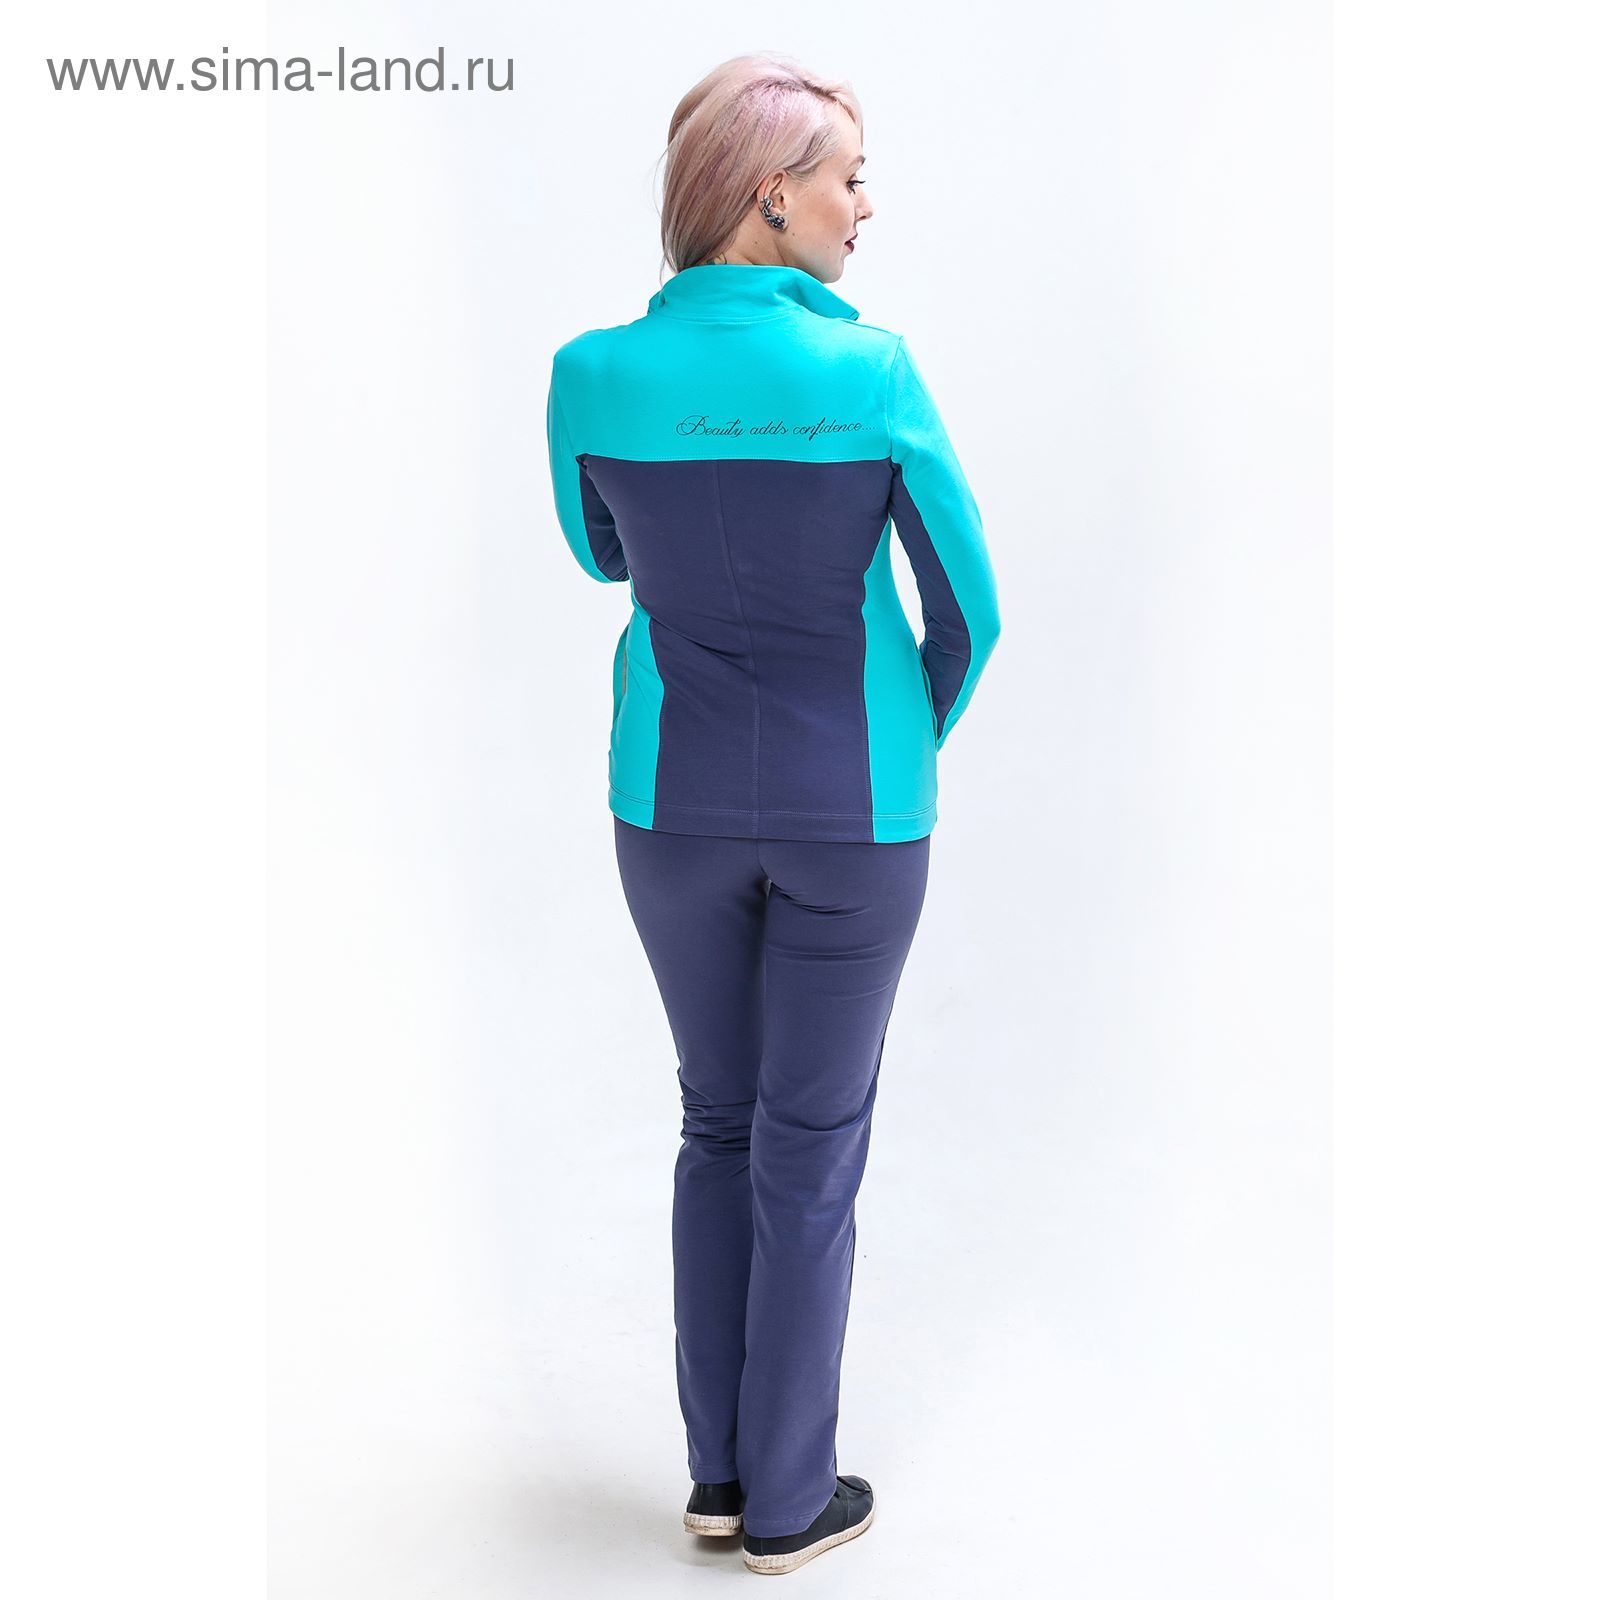 Комплект женский (толстовка, брюки) М-760-05 цвет ментол, р-р 42